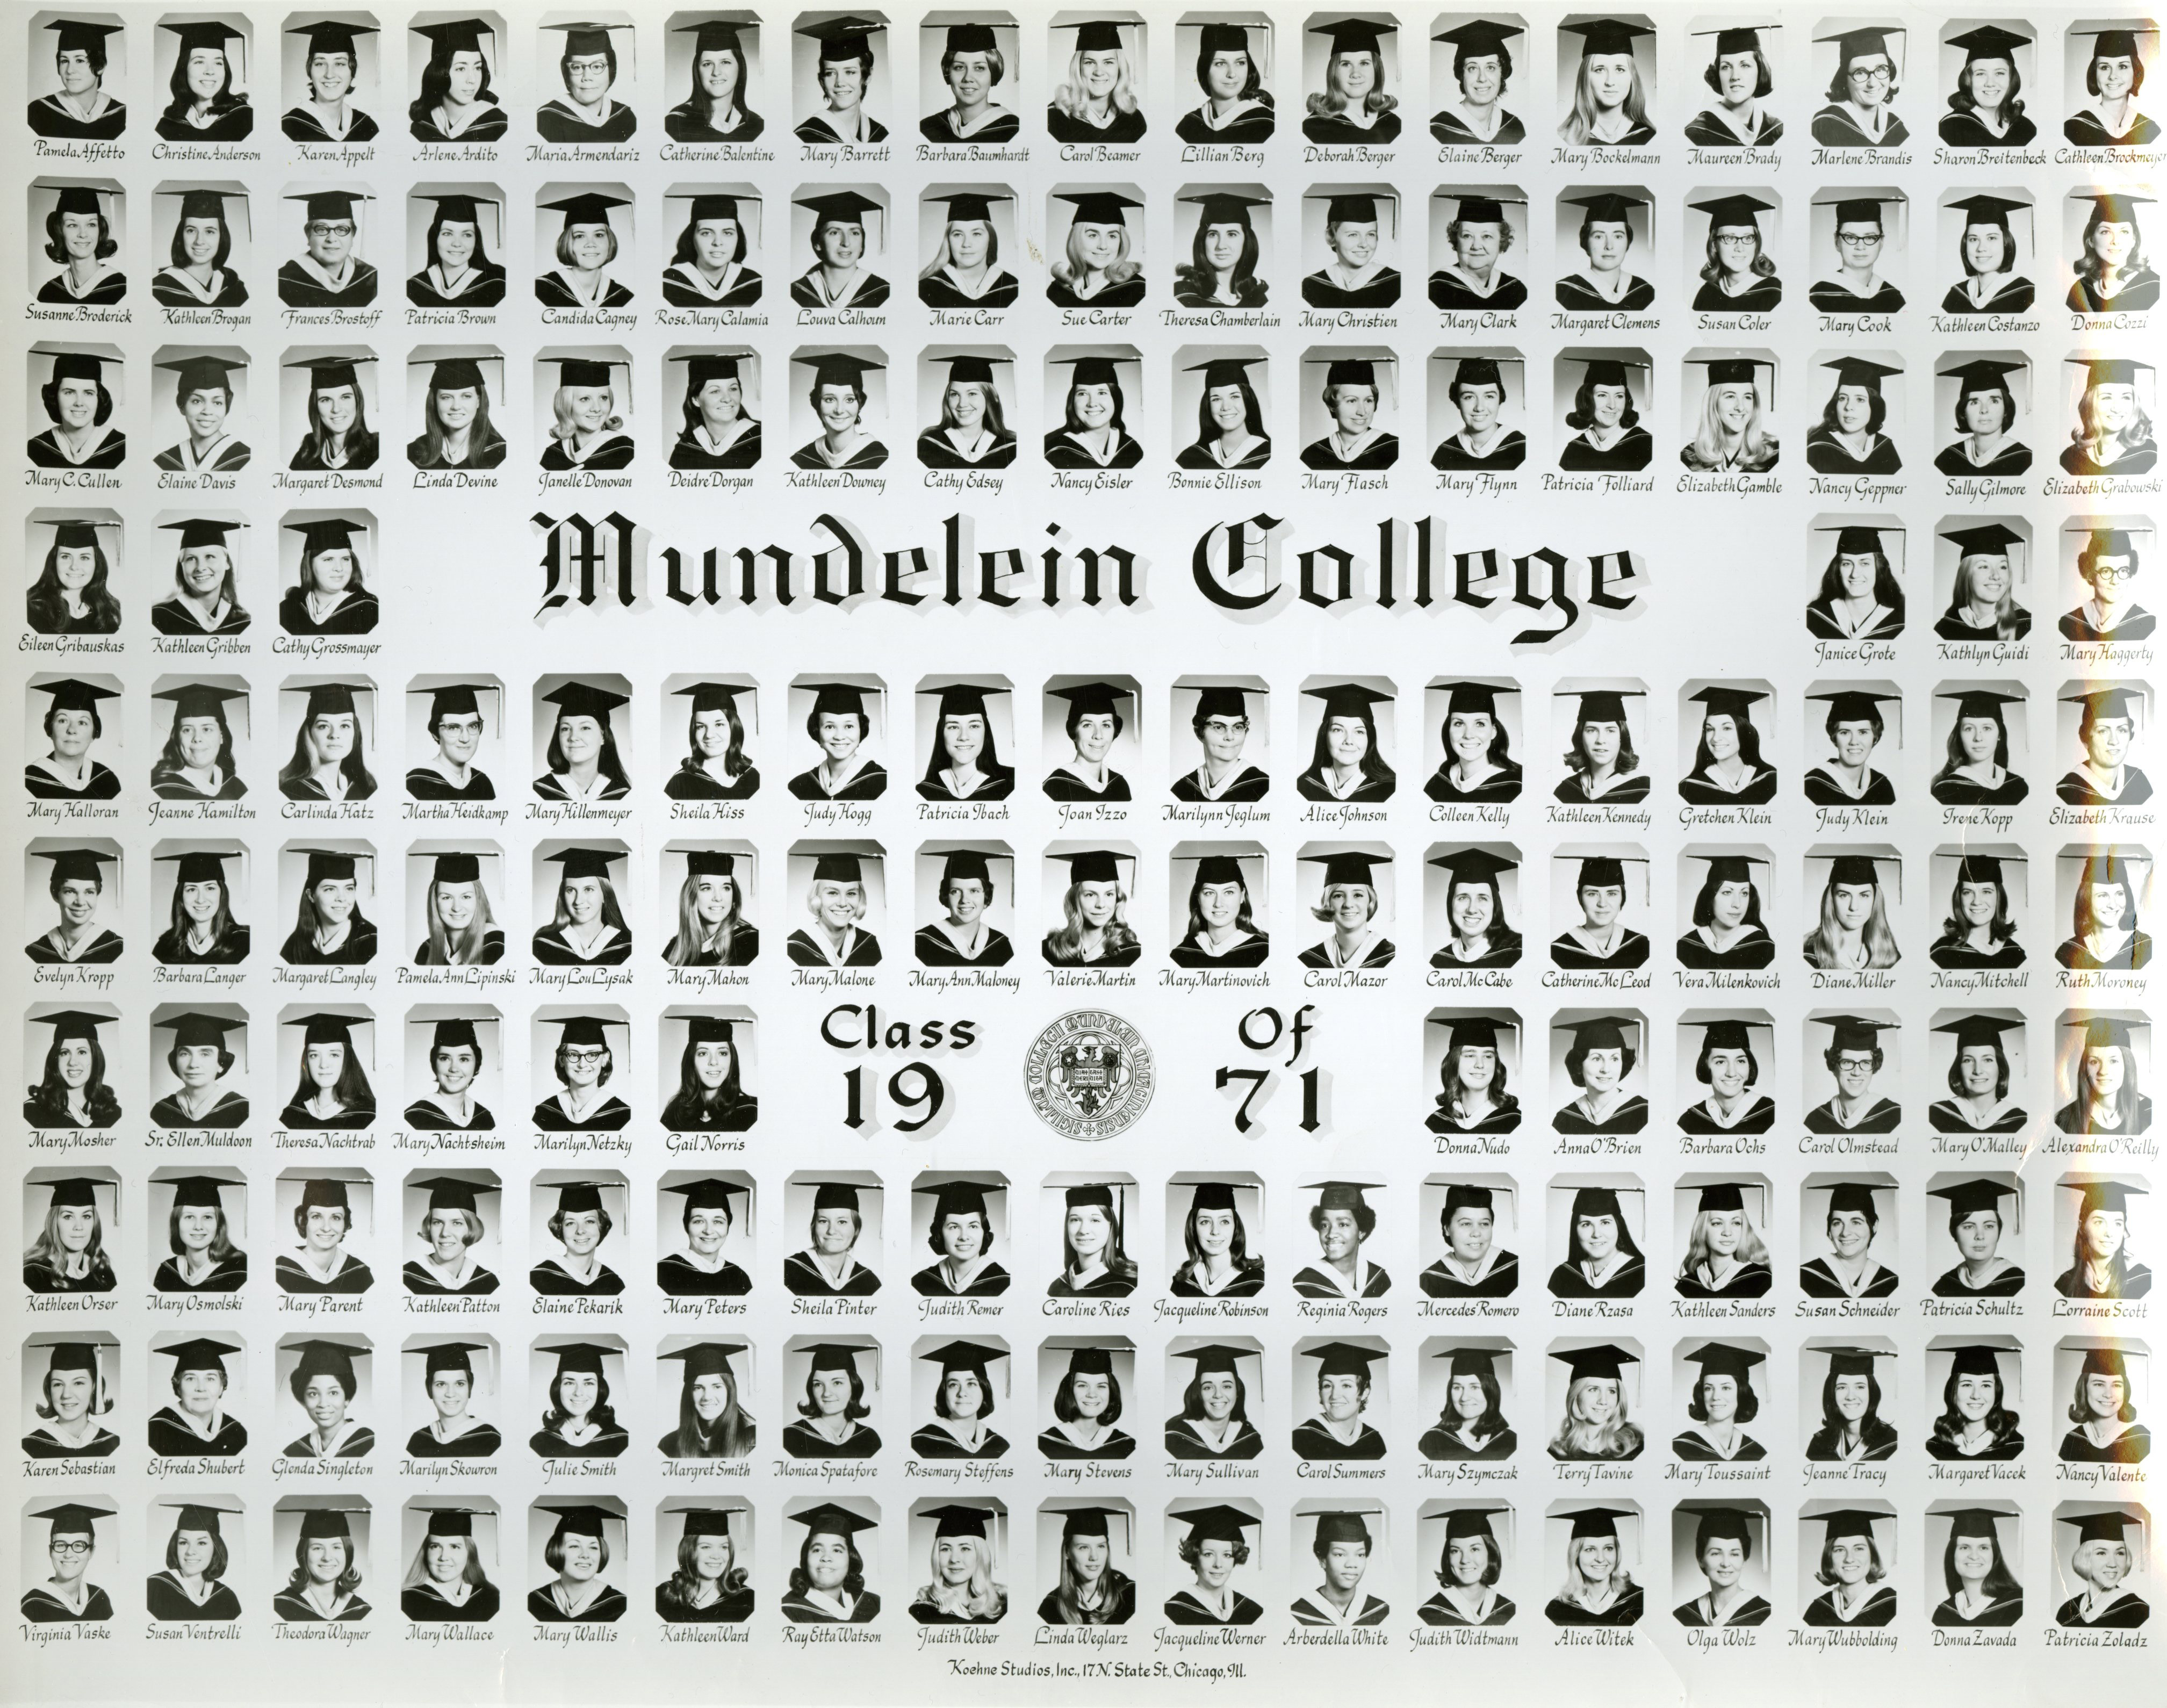 Mundelein College